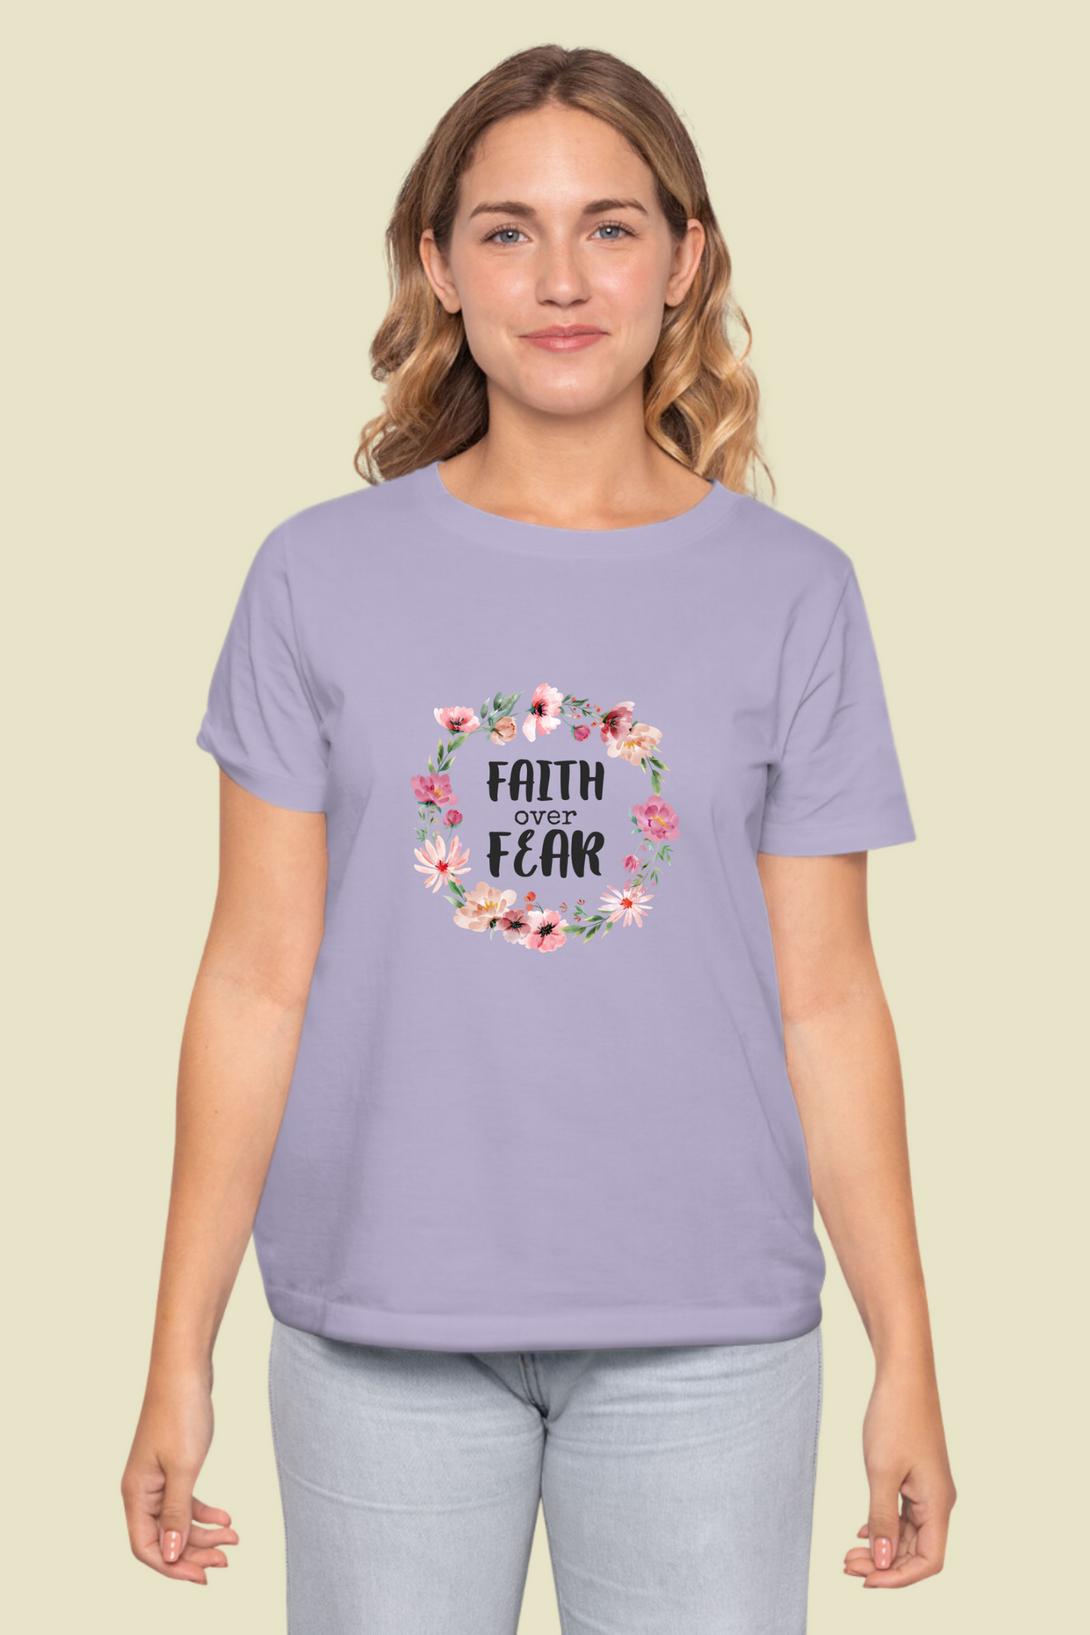 Faith Over Fear Printed T-Shirt For Women - WowWaves - 8